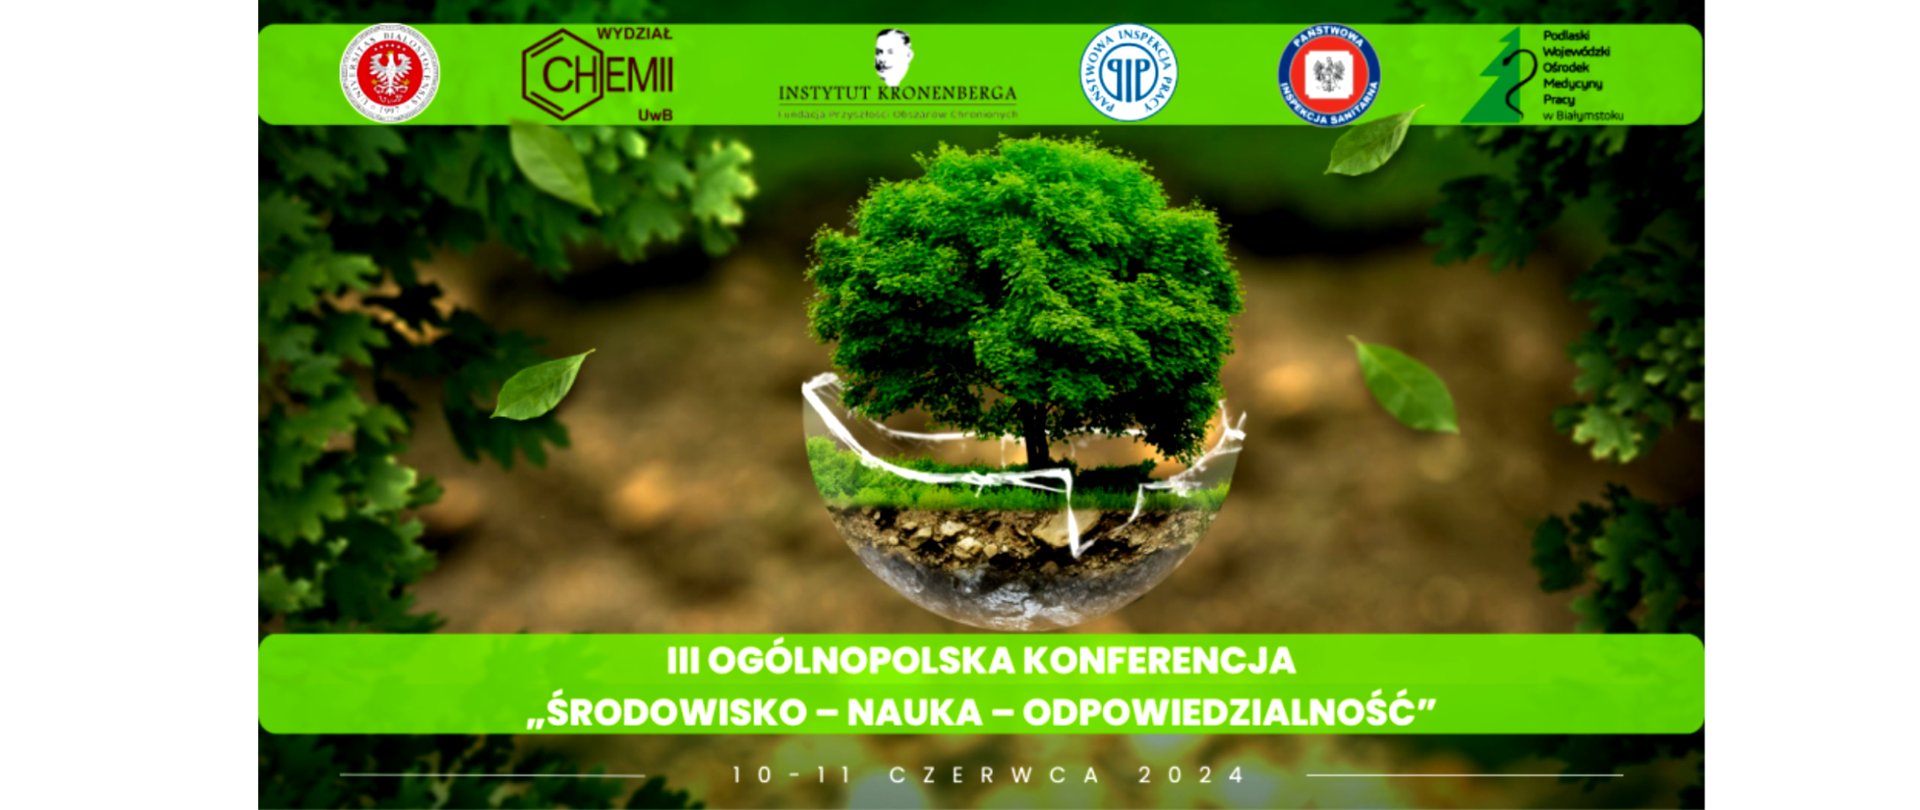 Logo organizatorów konferencji. Na środku zielone drzewo i napis III Ogólnopolska Konferencja "Środowisko - Nauka - Odpowiedzialność" 10 - 11 Czerwca 2024